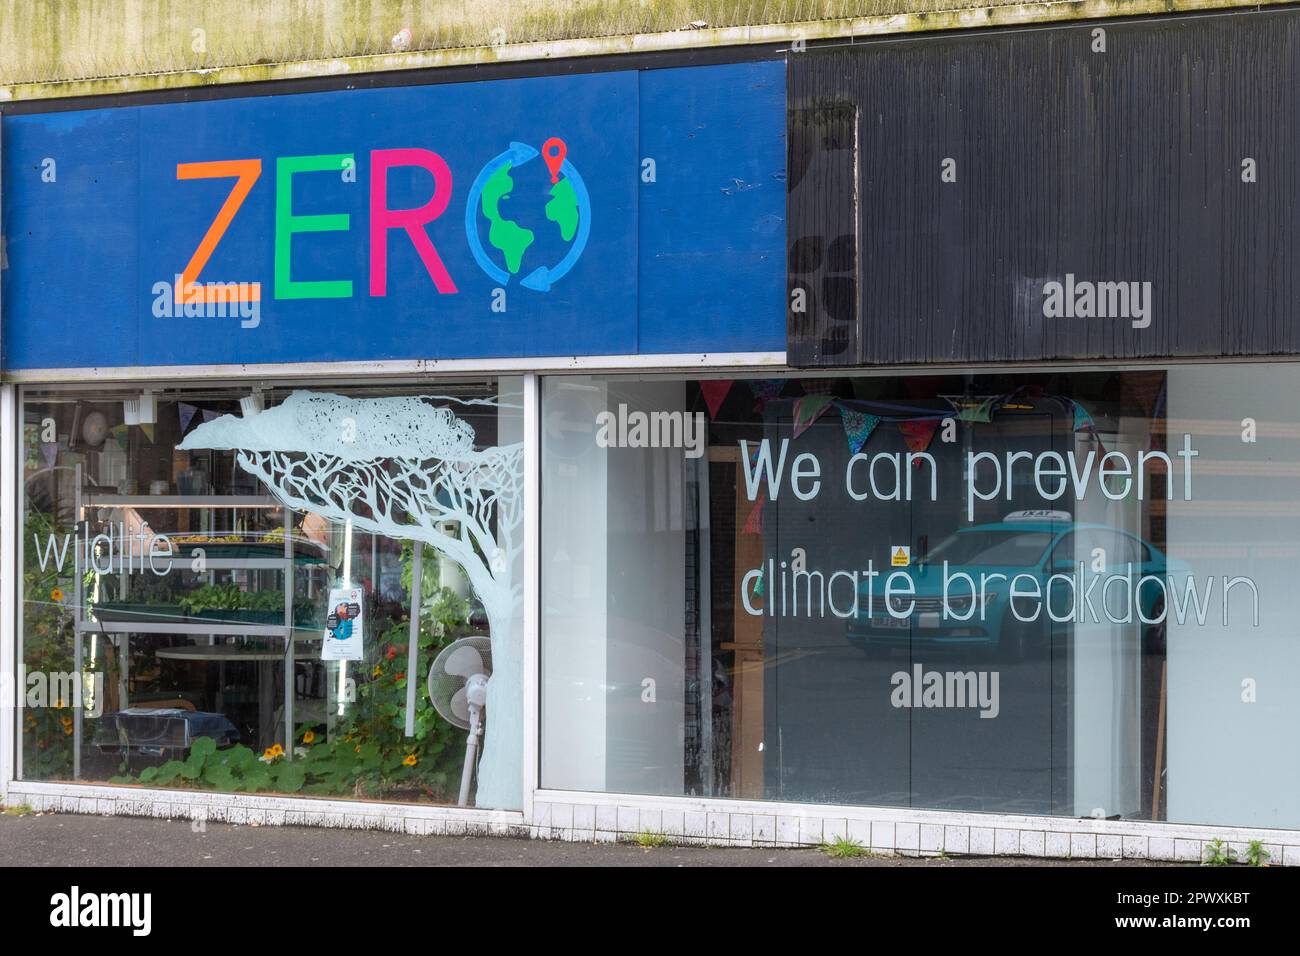 Zéro, espace communautaire mis en place pour mener un plan d'action climatique communautaire dans la ville de Guildford, Surrey, Angleterre, Royaume-Uni. Durabilité et environnement Banque D'Images